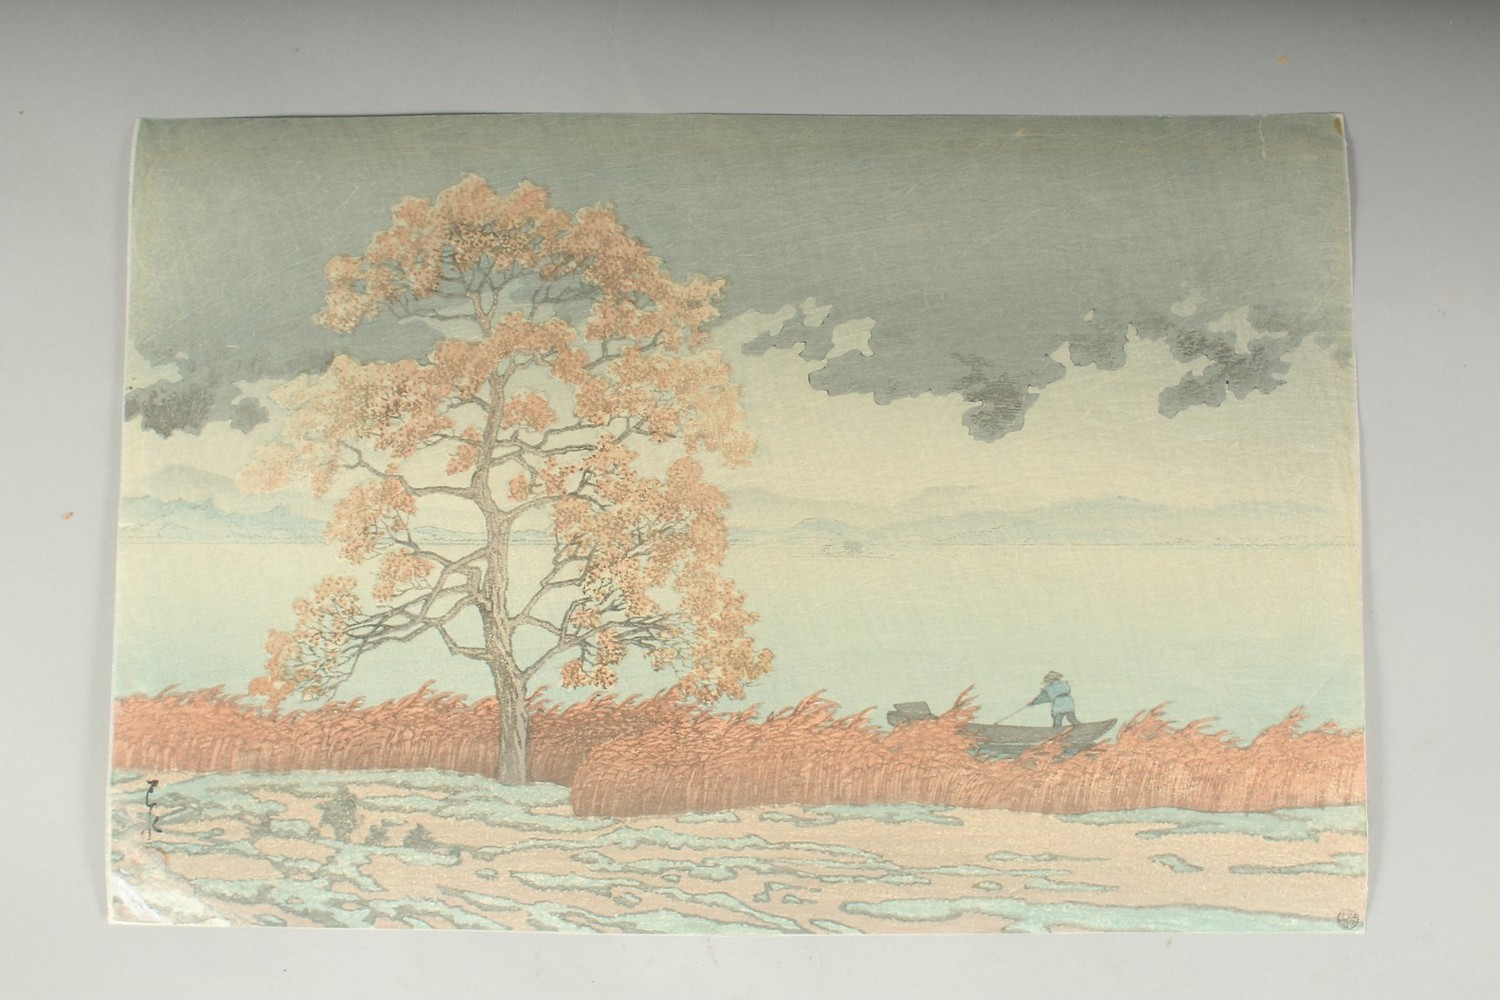 HASUI KAWASE (1883-1957): LAKESIDE SHOWER AT MATSUE, c. 1930s; an original Japanese woodblock